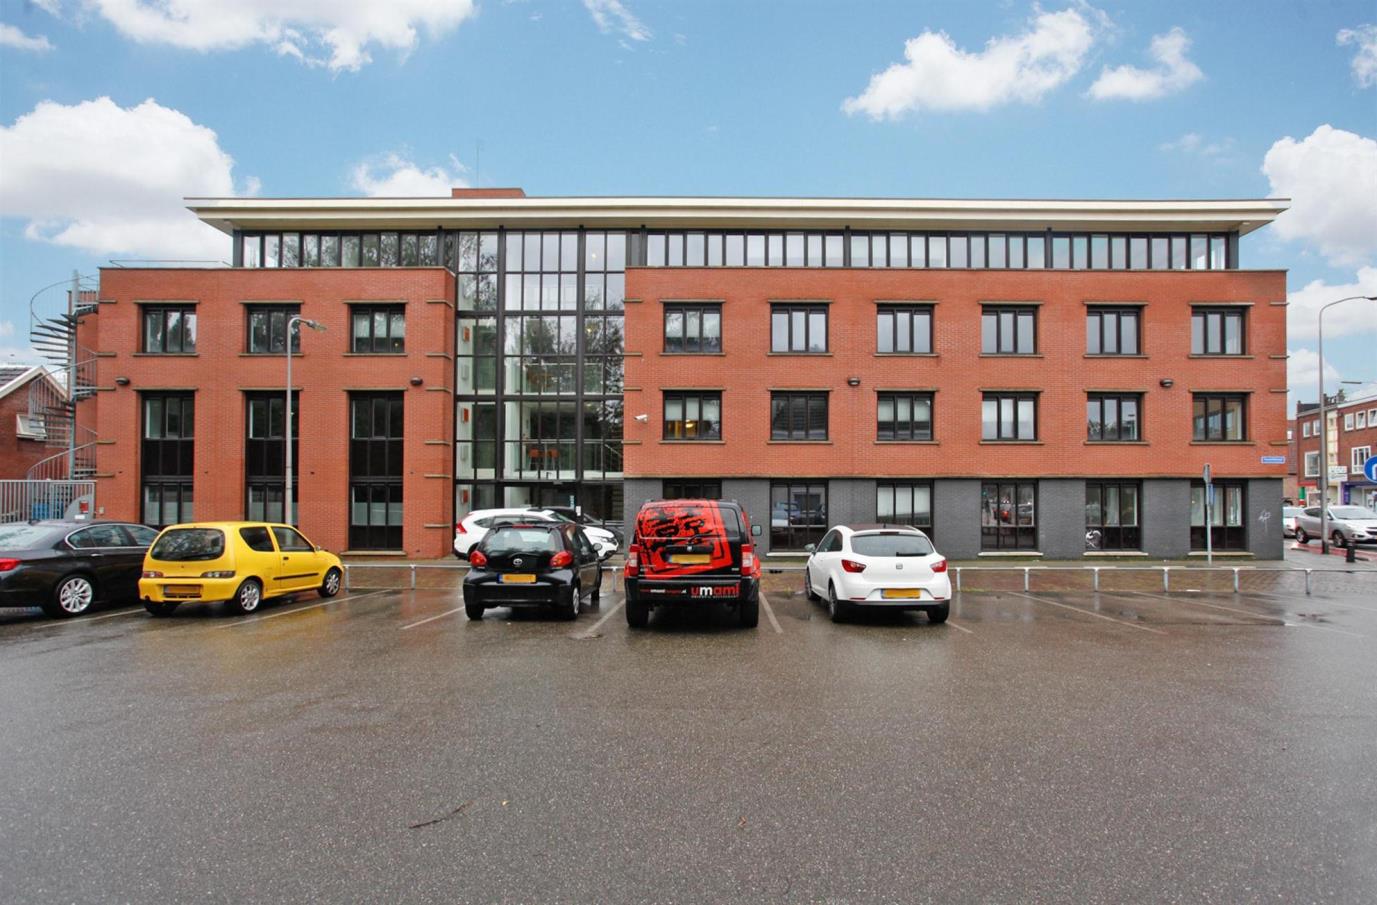 T e huur / Te koop M odern kantoorgebouw centrum van Henge lo Modern kantoorgebouw in het centrum van Hengelo welke recent is voorzien van een nieuwe pui aan parkeerplaats zijde.